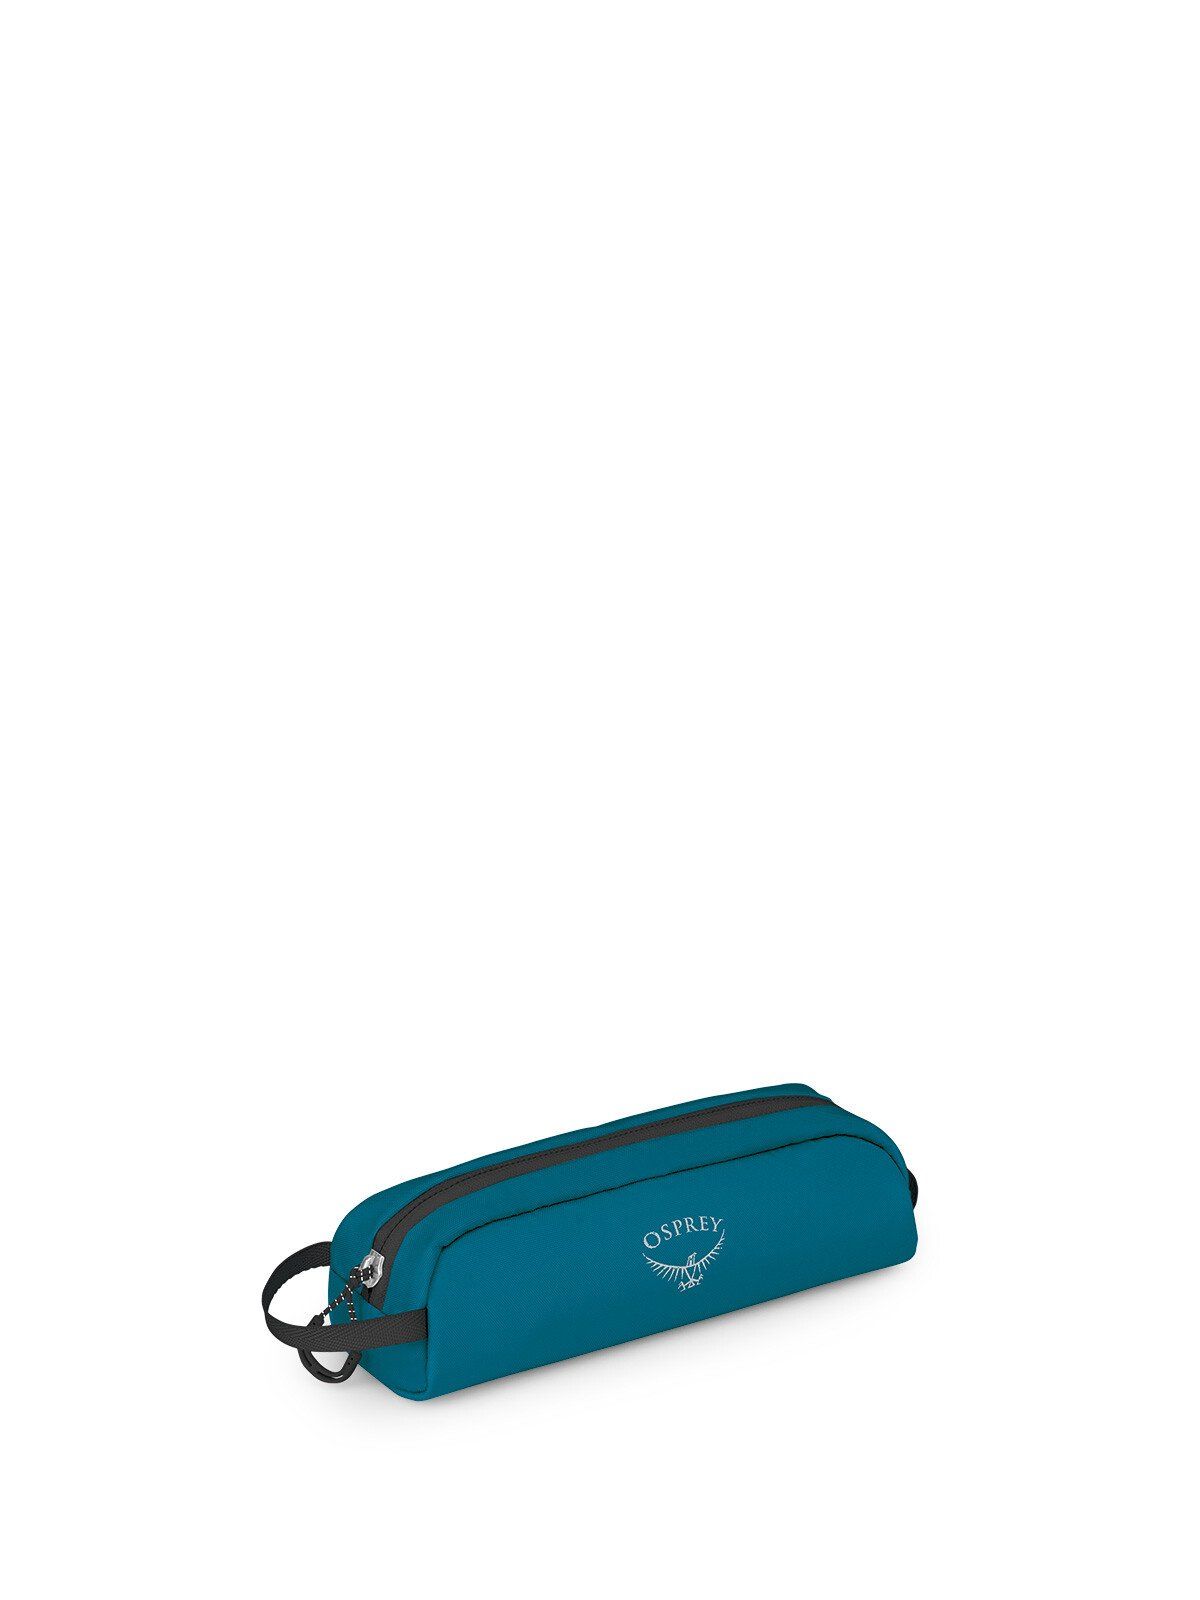 Image of Osprey Luggage Customization Kit